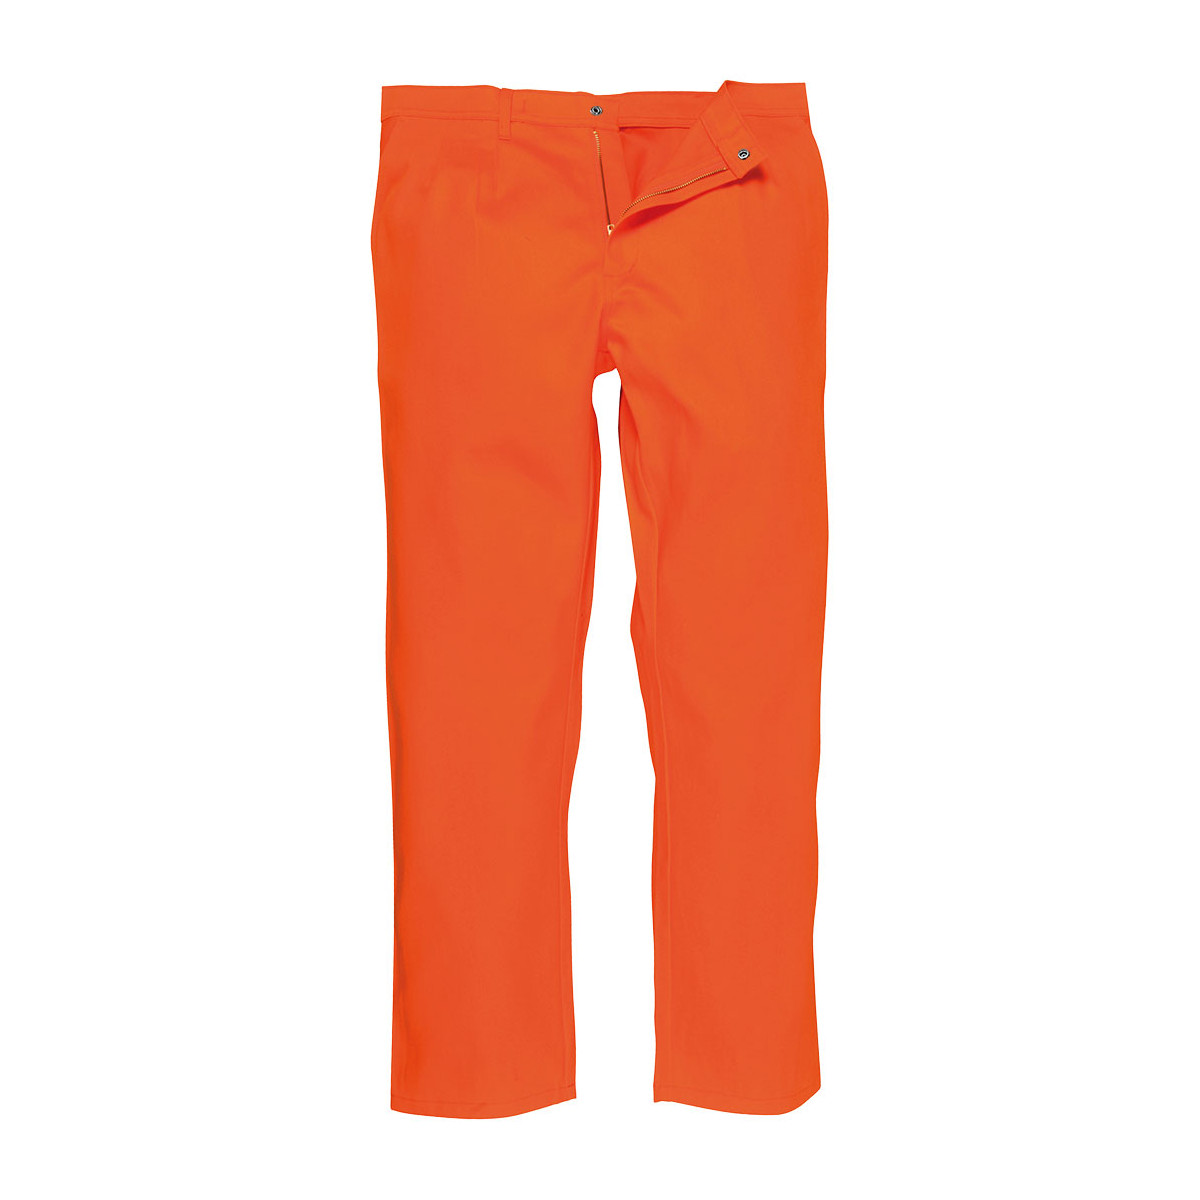 trudnopalna-odziez - Spodnie do pasa trudnopalne bizweld pomarańczowe odblaskowe BZ30 Portwest